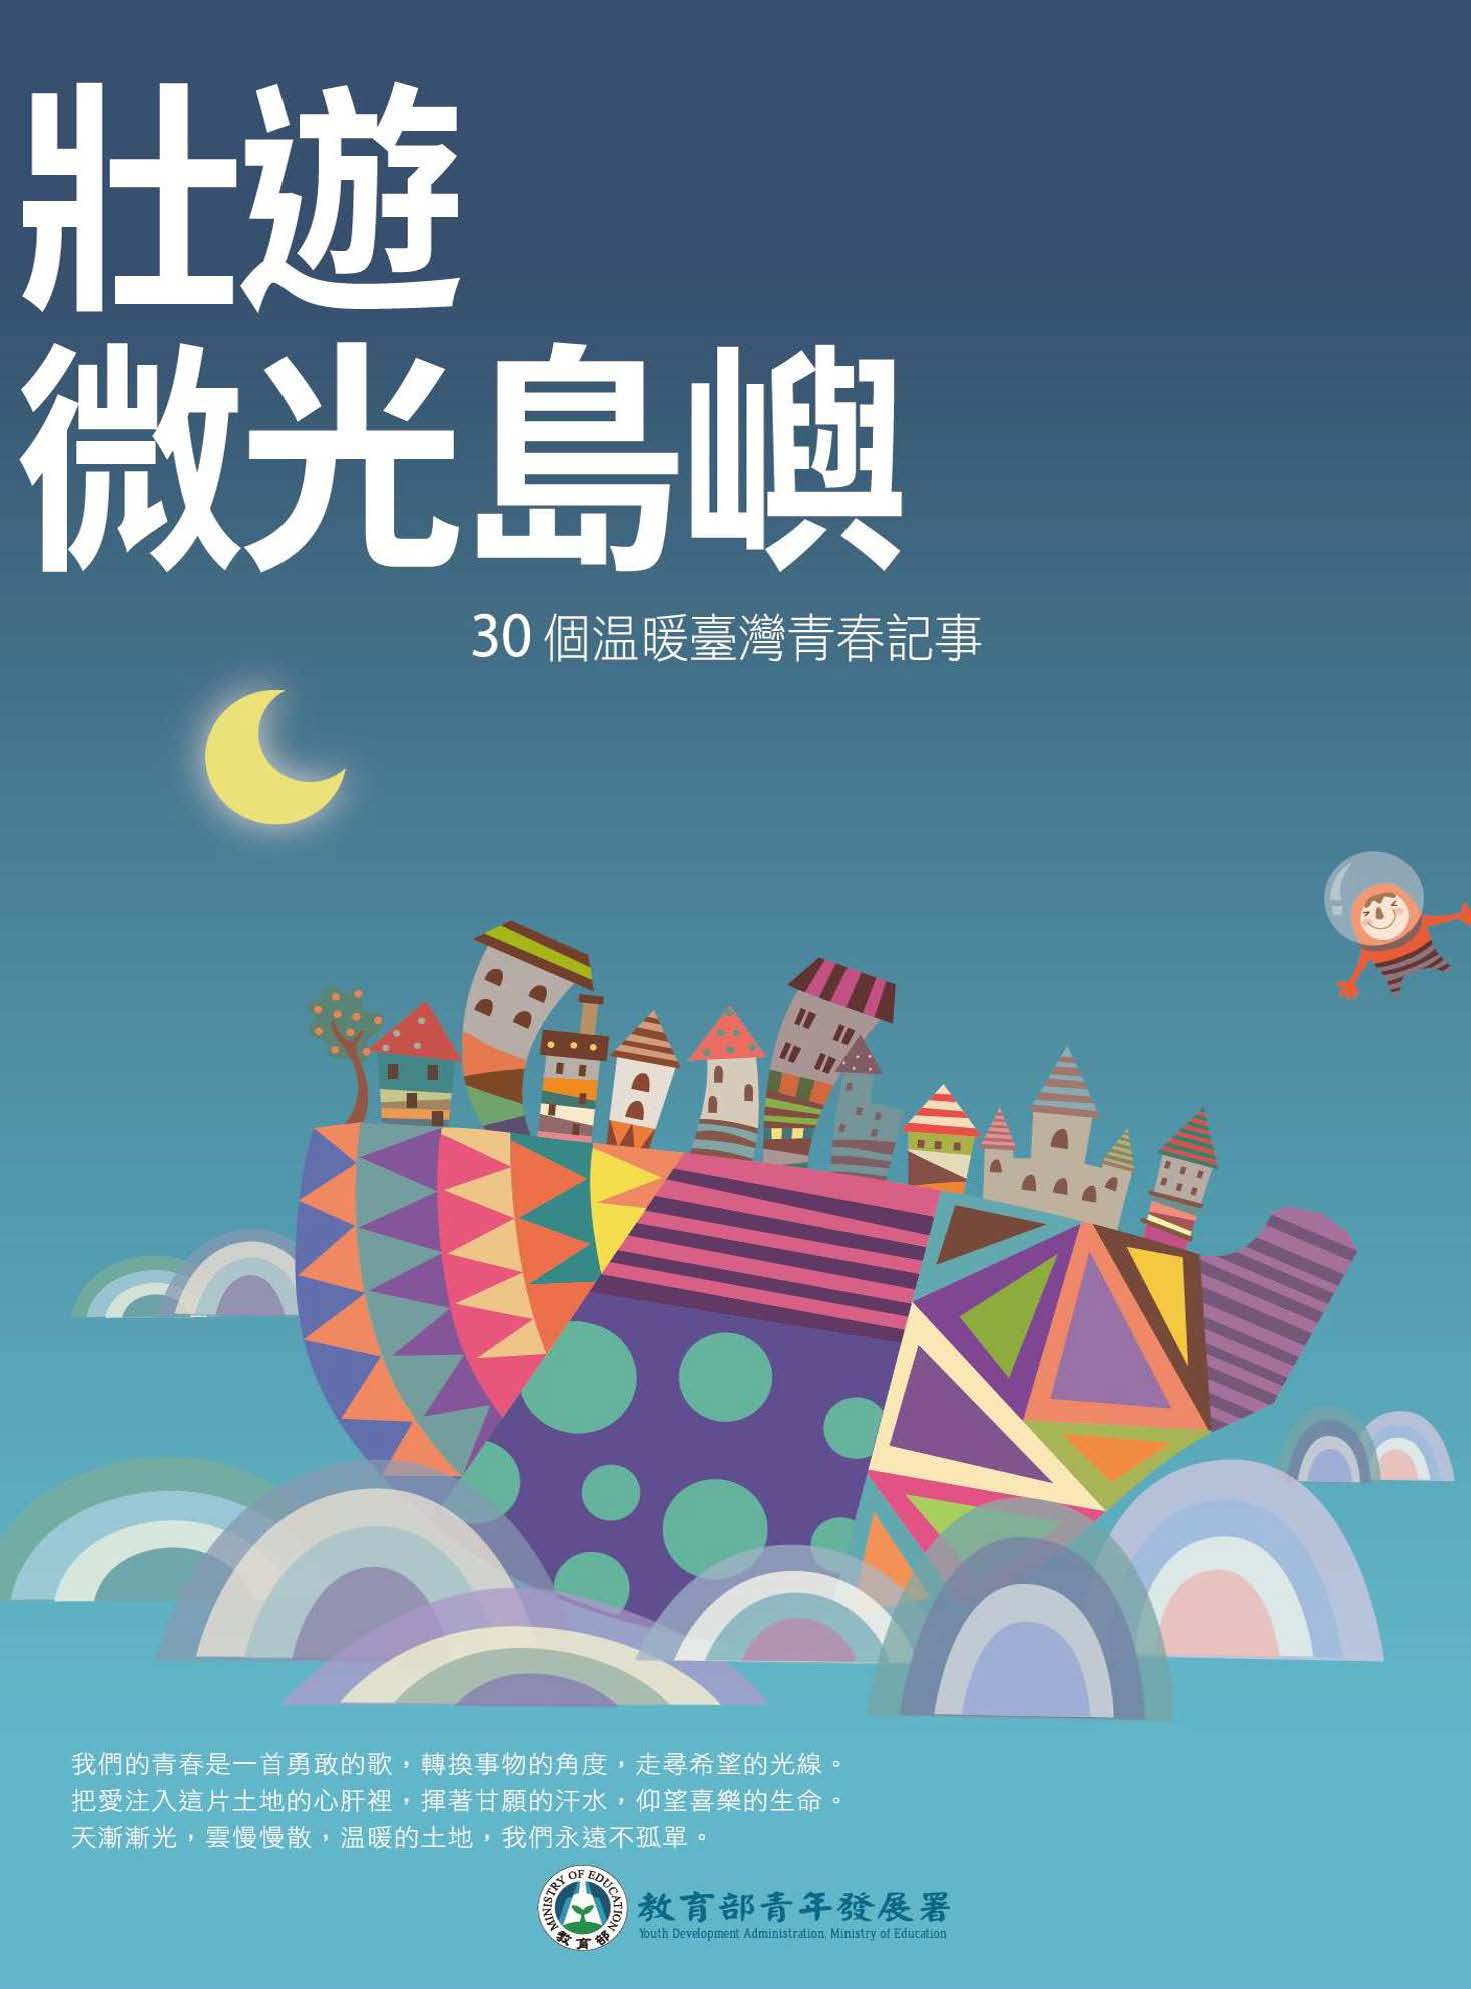 壯遊 微光島嶼: 30個溫暖臺灣青春記事